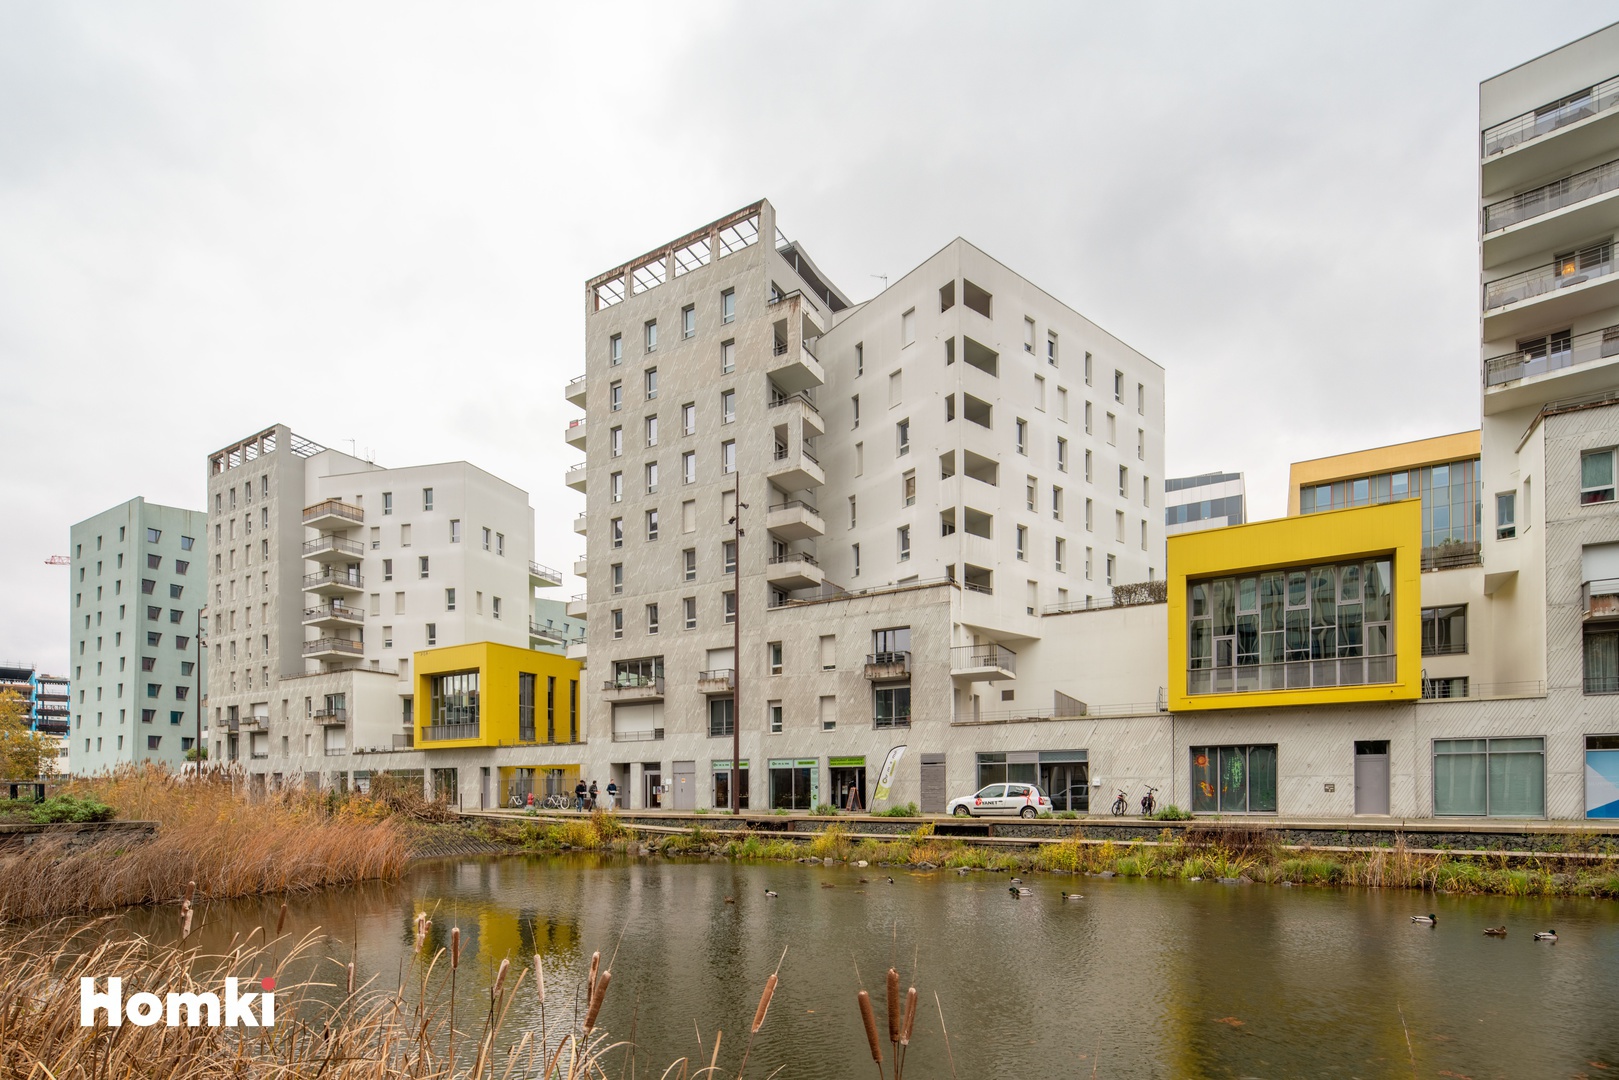 Homki - Vente Appartement  de 42.8 m² à Nantes 44200